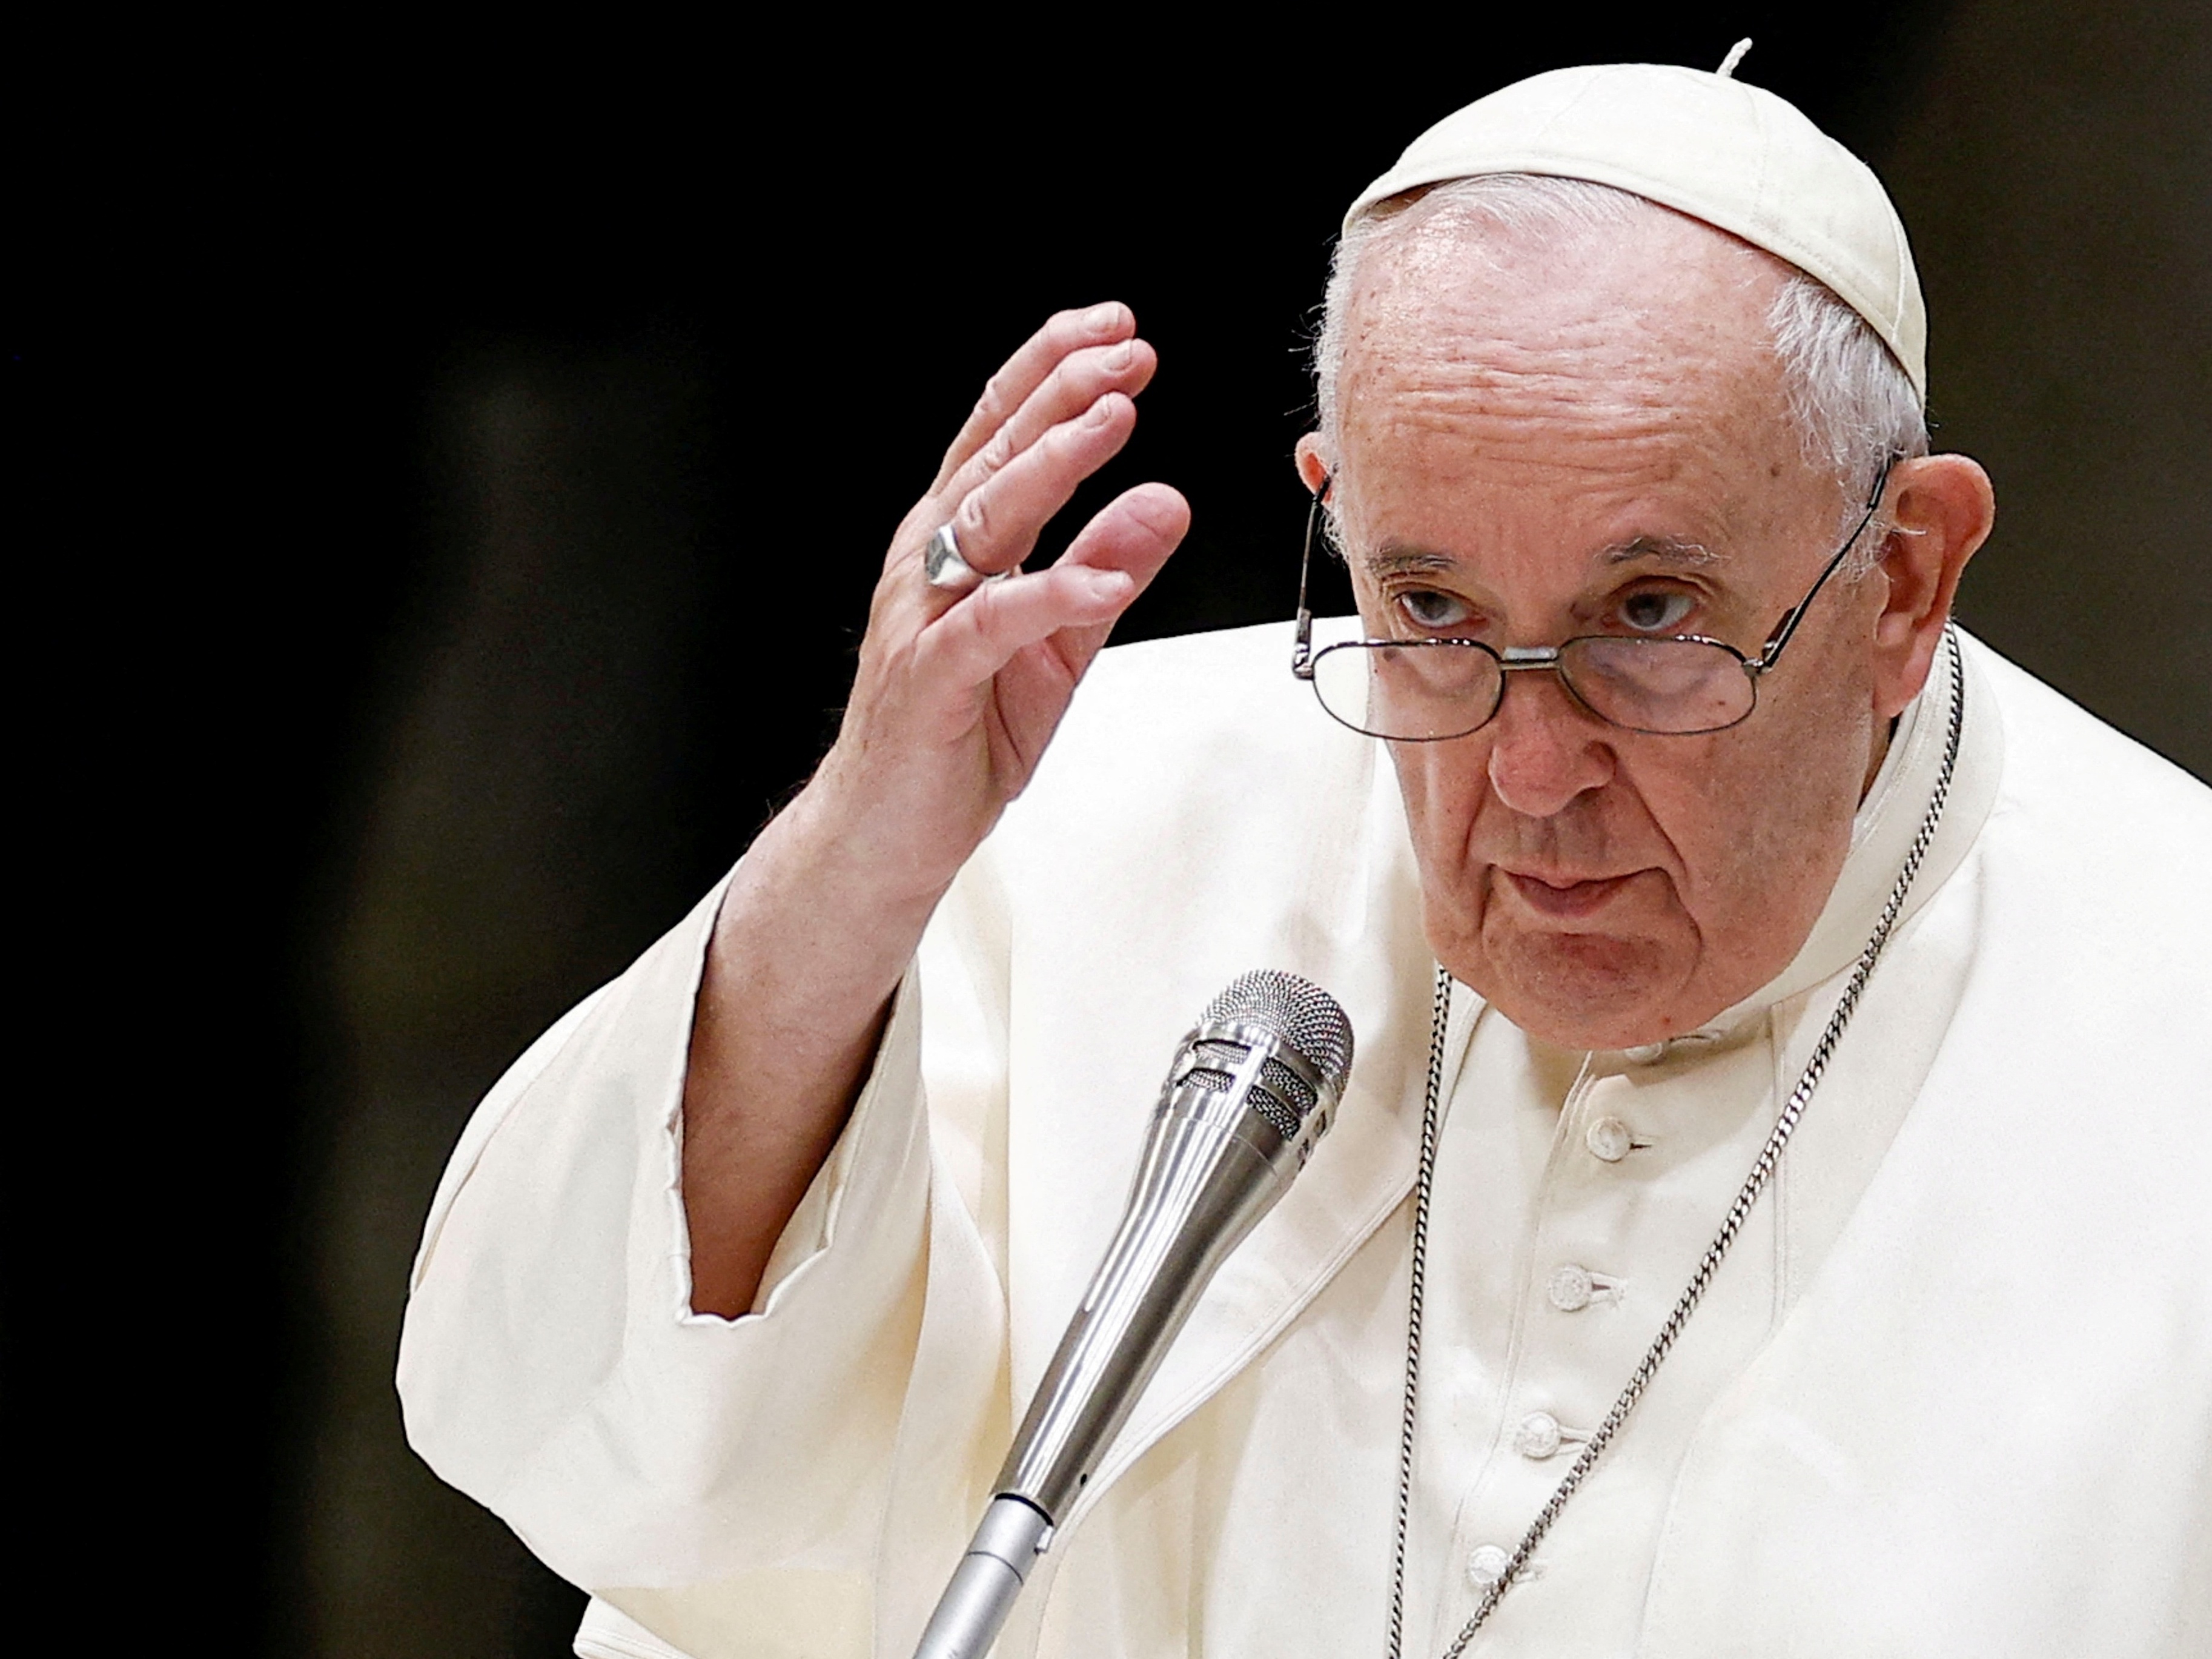 Jornal diz que papa Francisco está com câncer; Vaticano desmente